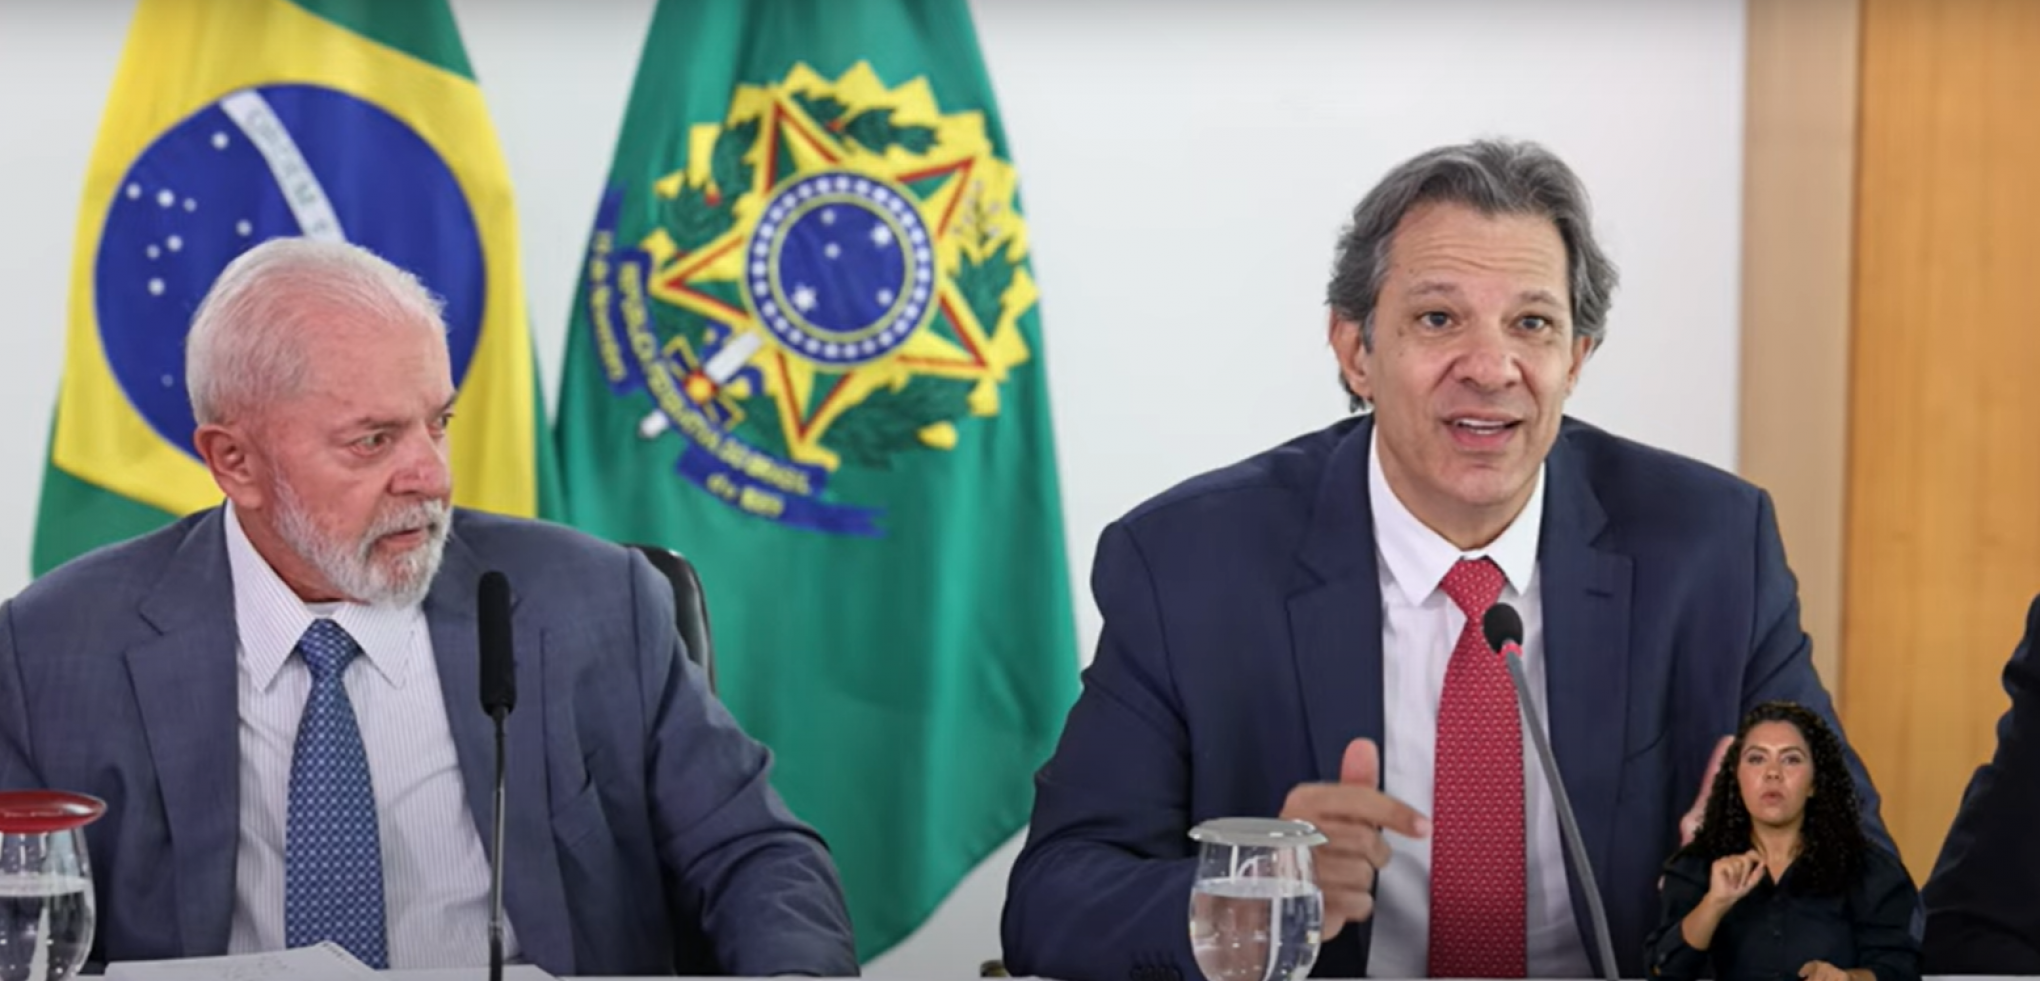 AGÊNCIA LUPA: Governo Federal não enviou alimentos vencidos ao RS; vídeo é antigo